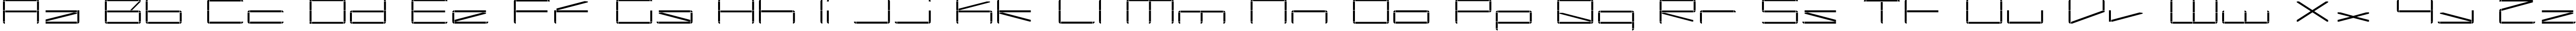 Пример написания английского алфавита шрифтом Capacitor regular